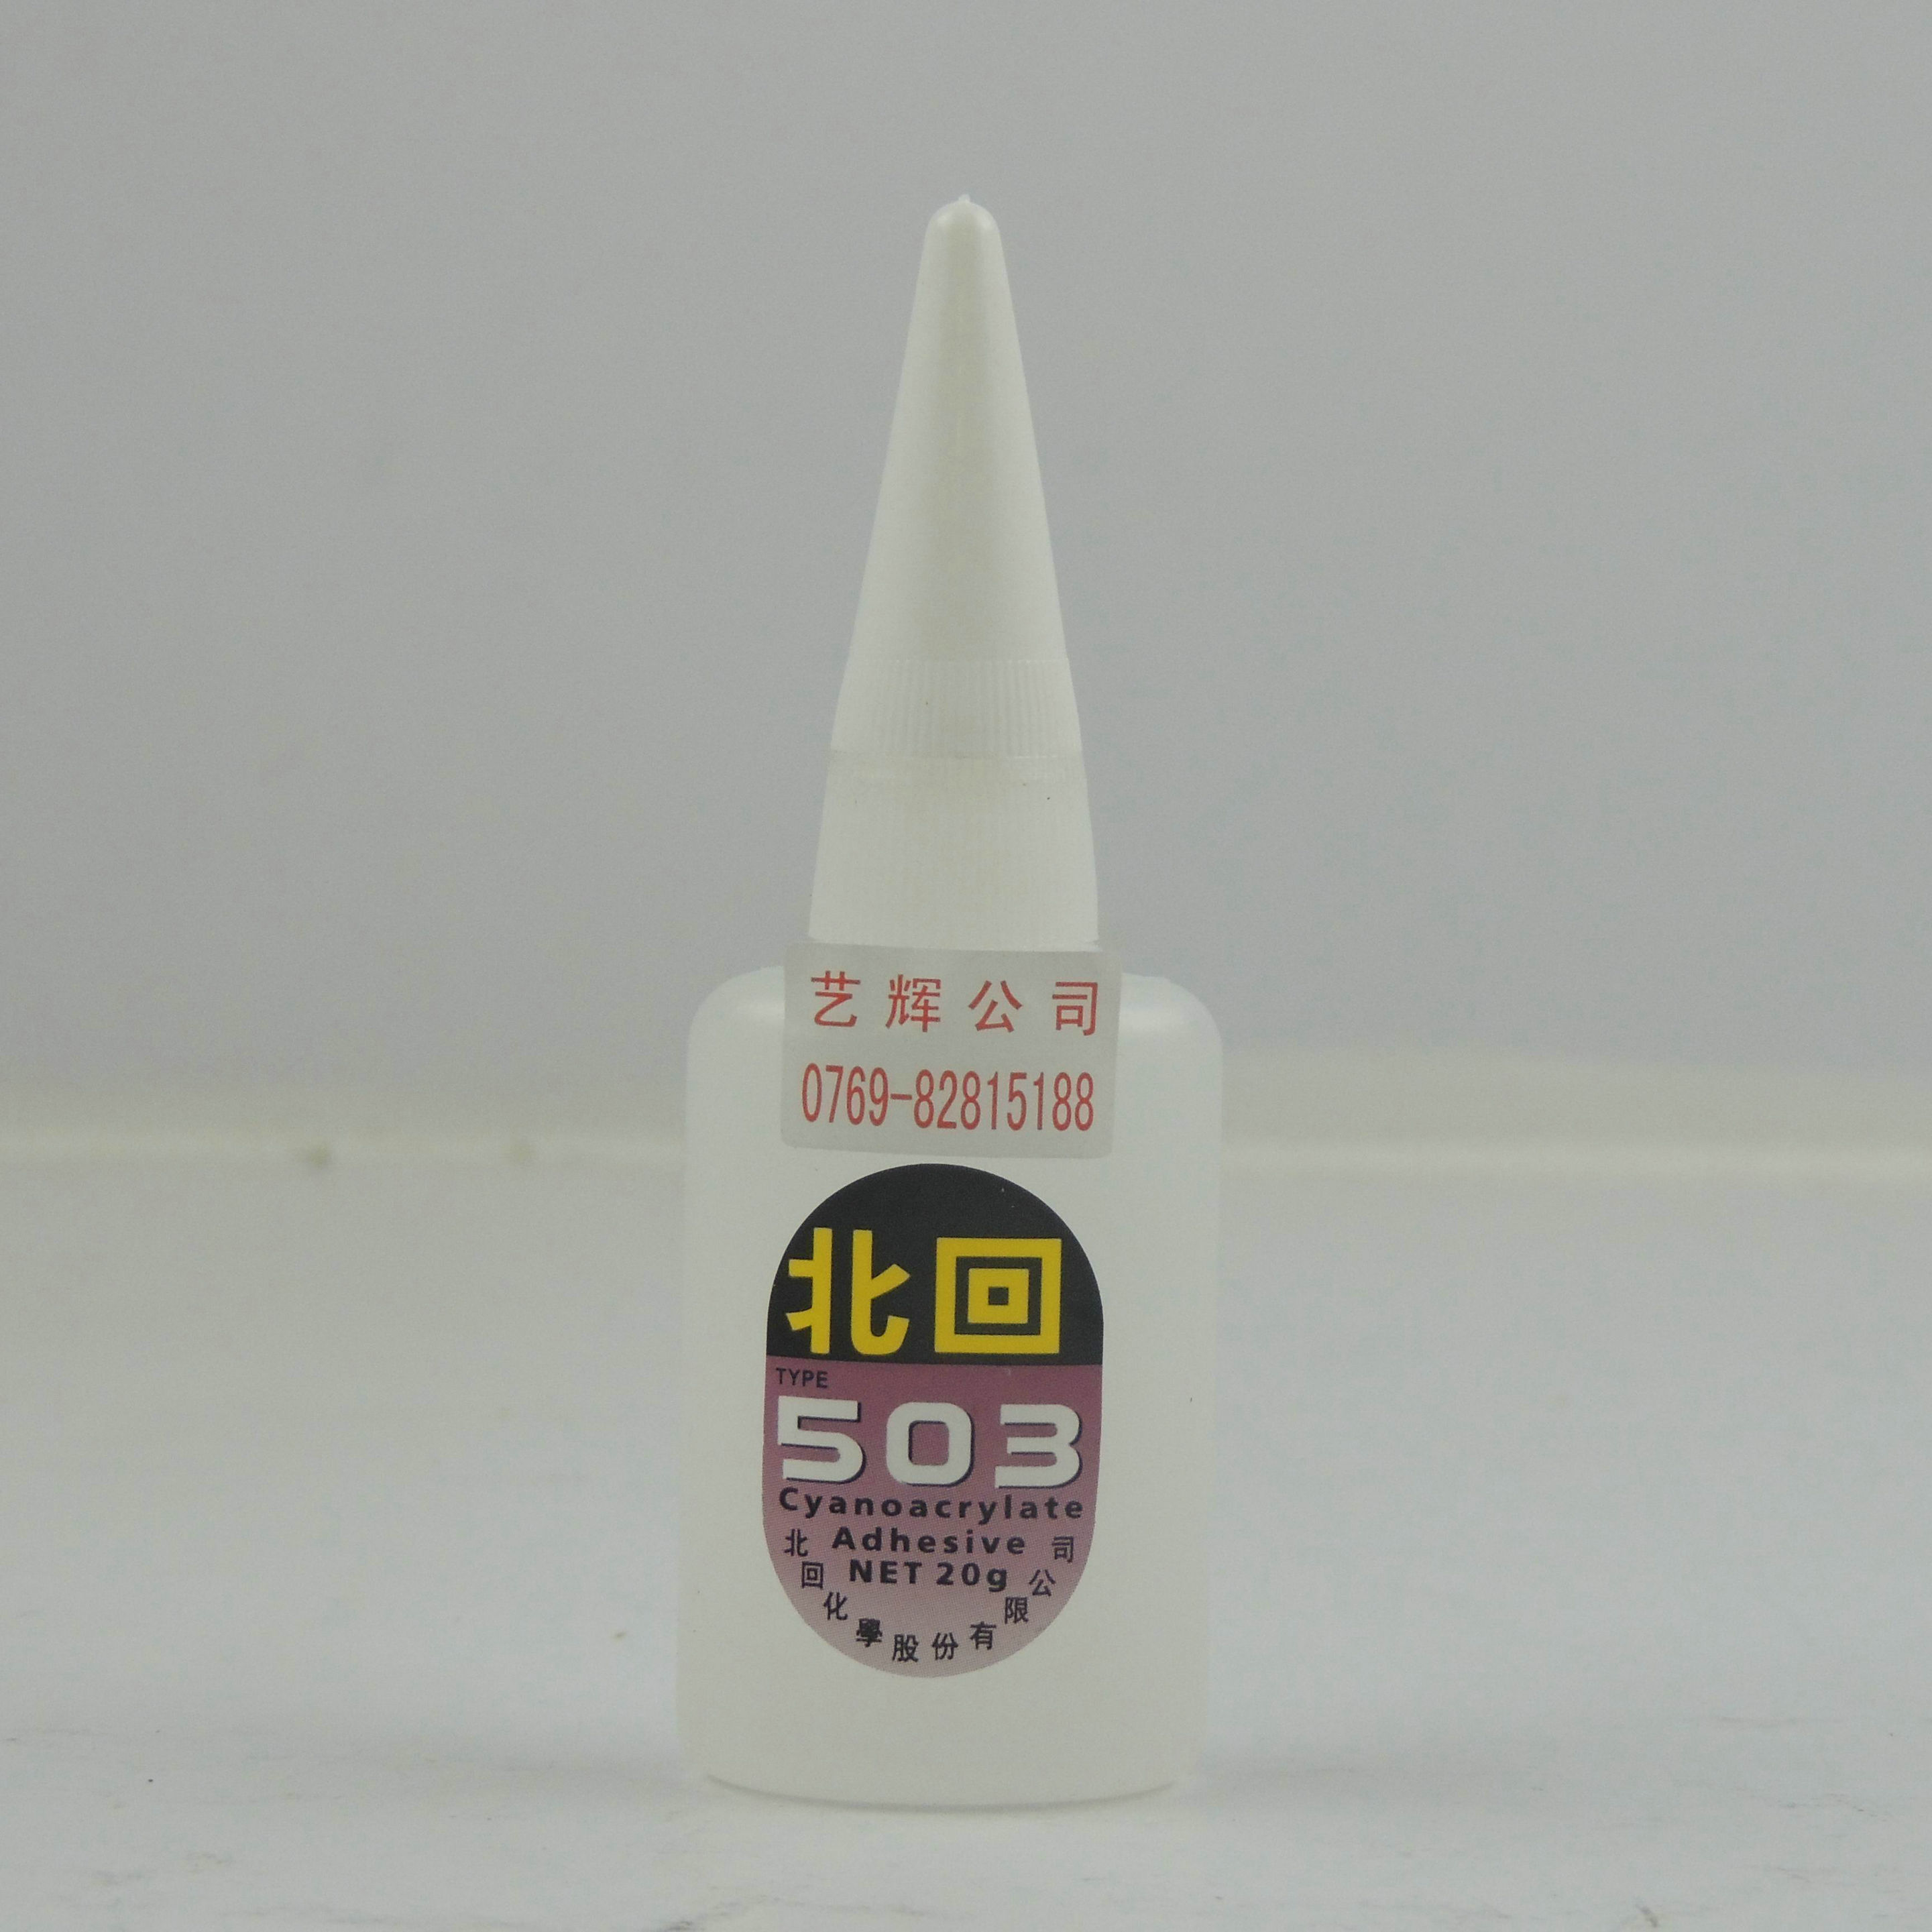 特价正品北回503胶水 强力瞬间胶 低白化20g小支 台湾正品 促销